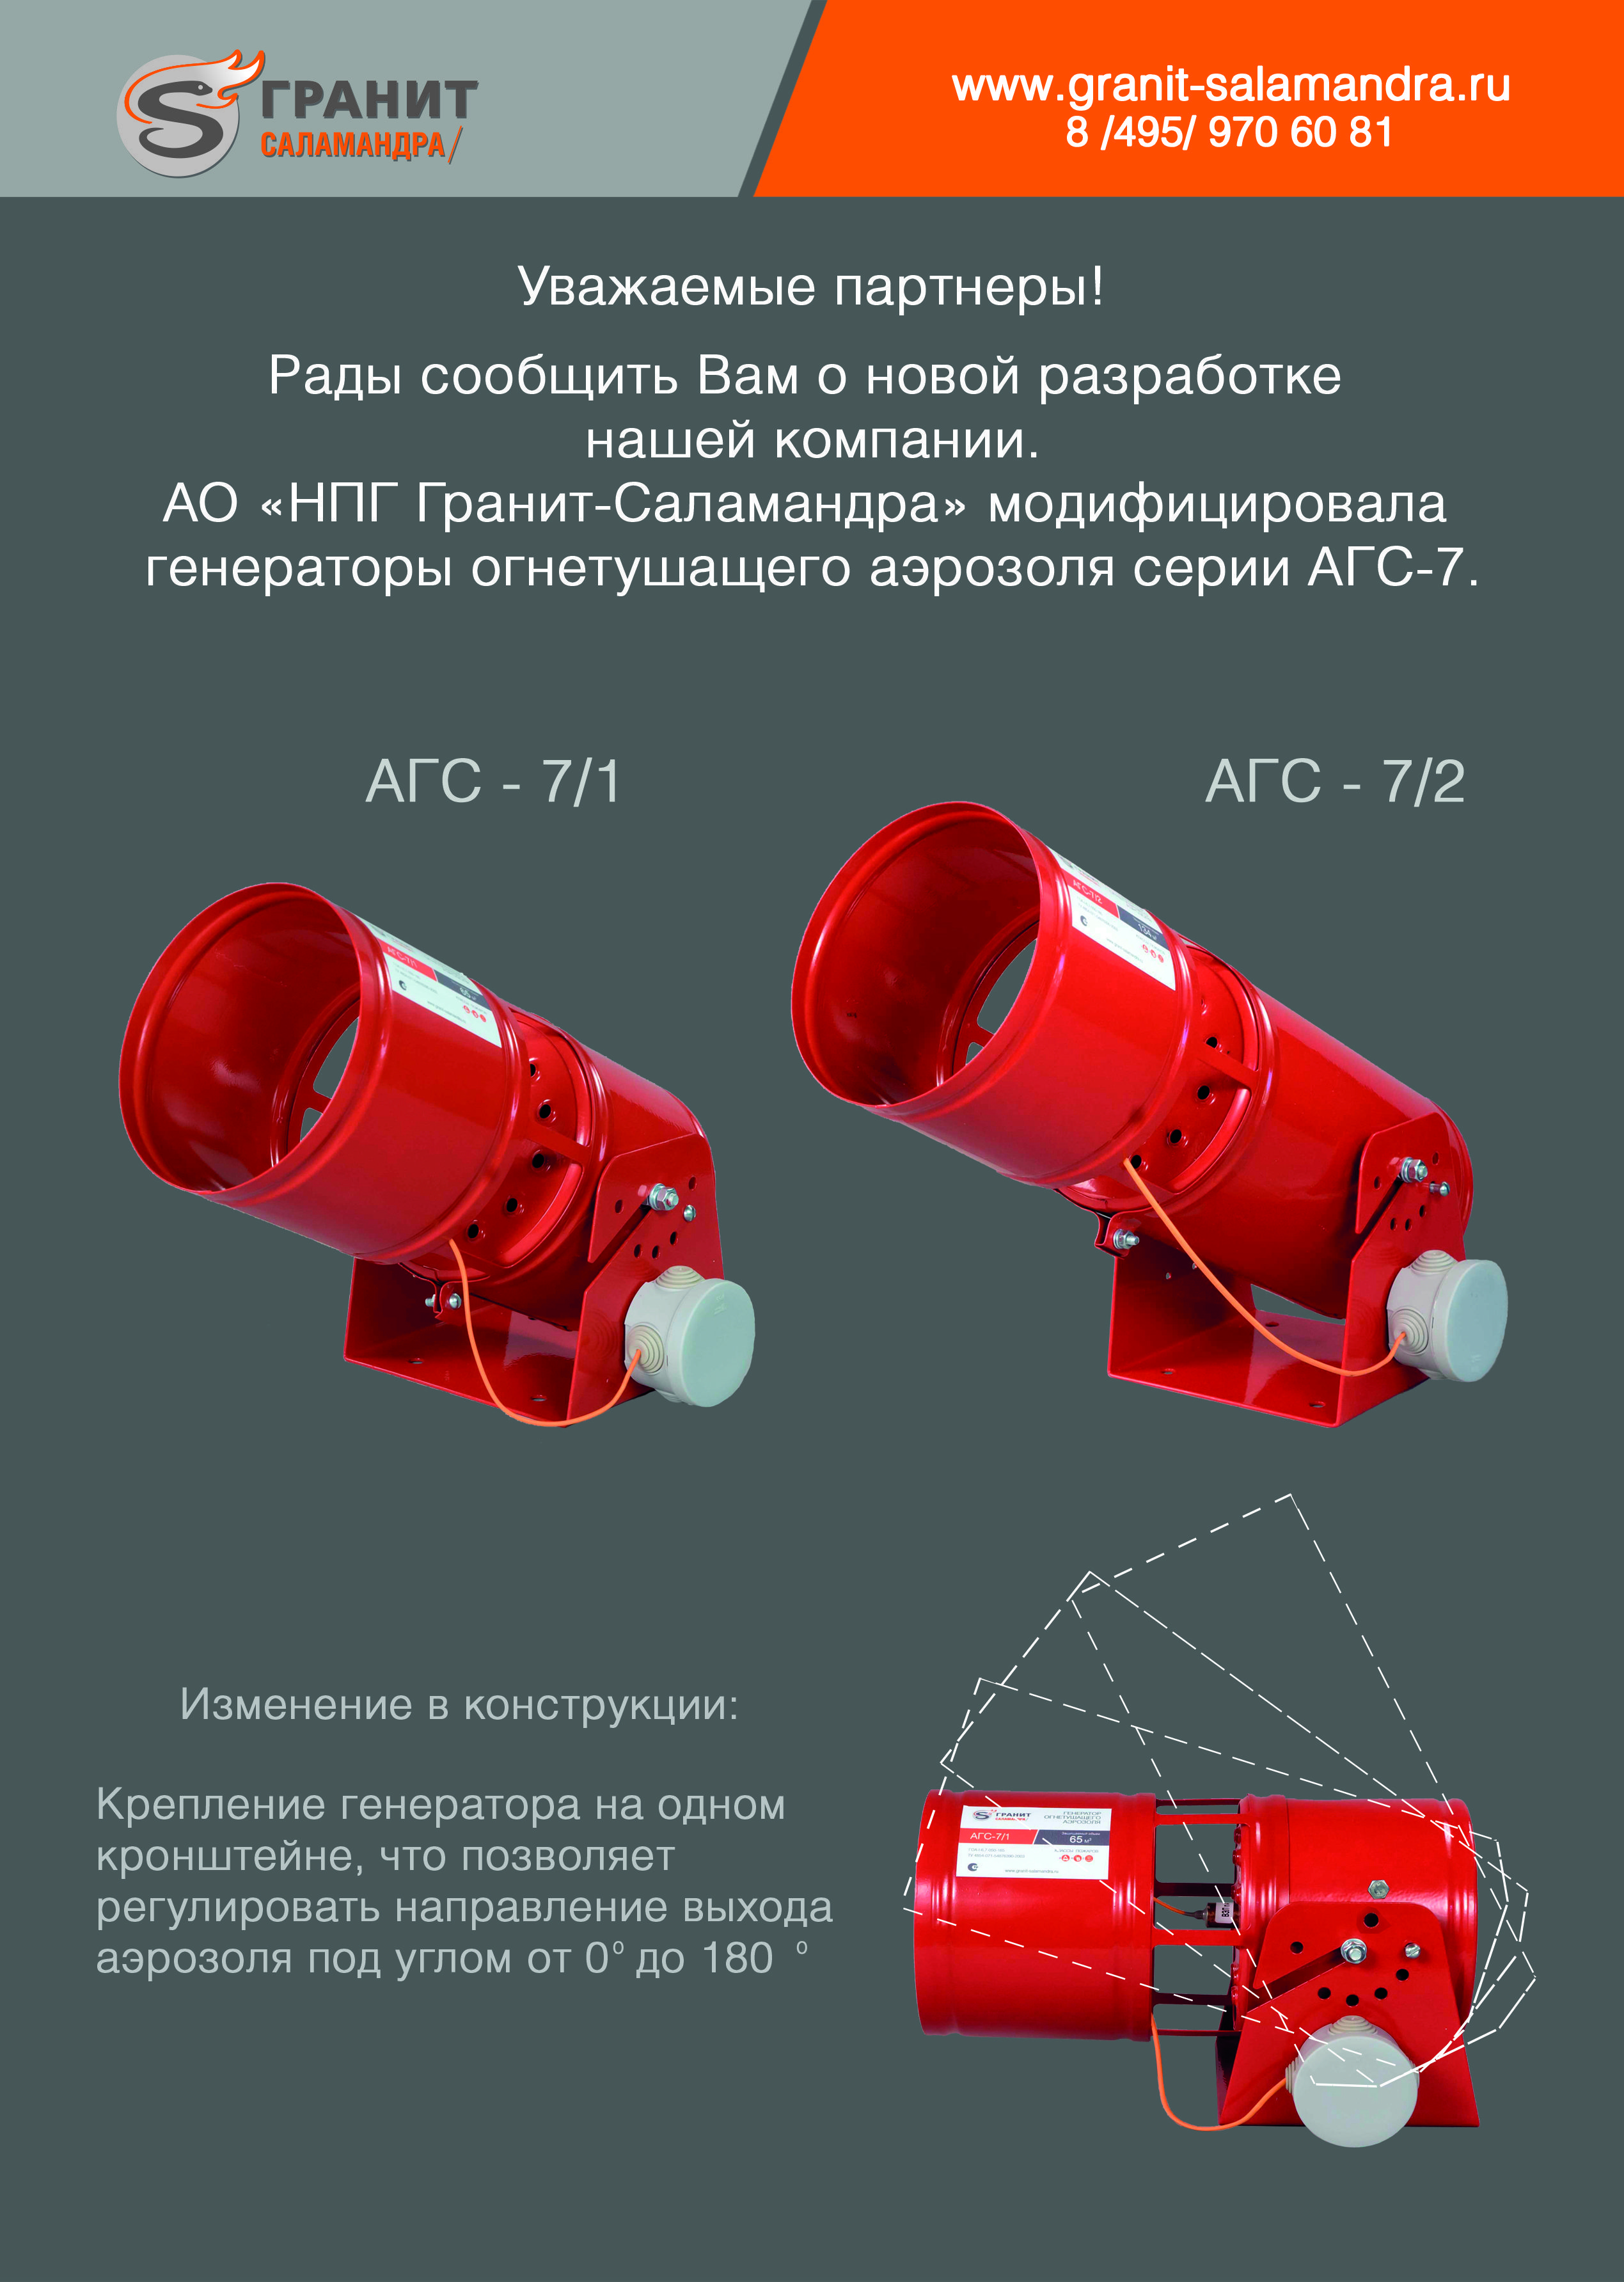 Новая модификация генераторов огнетушащего аэрозоля серии АГС-7